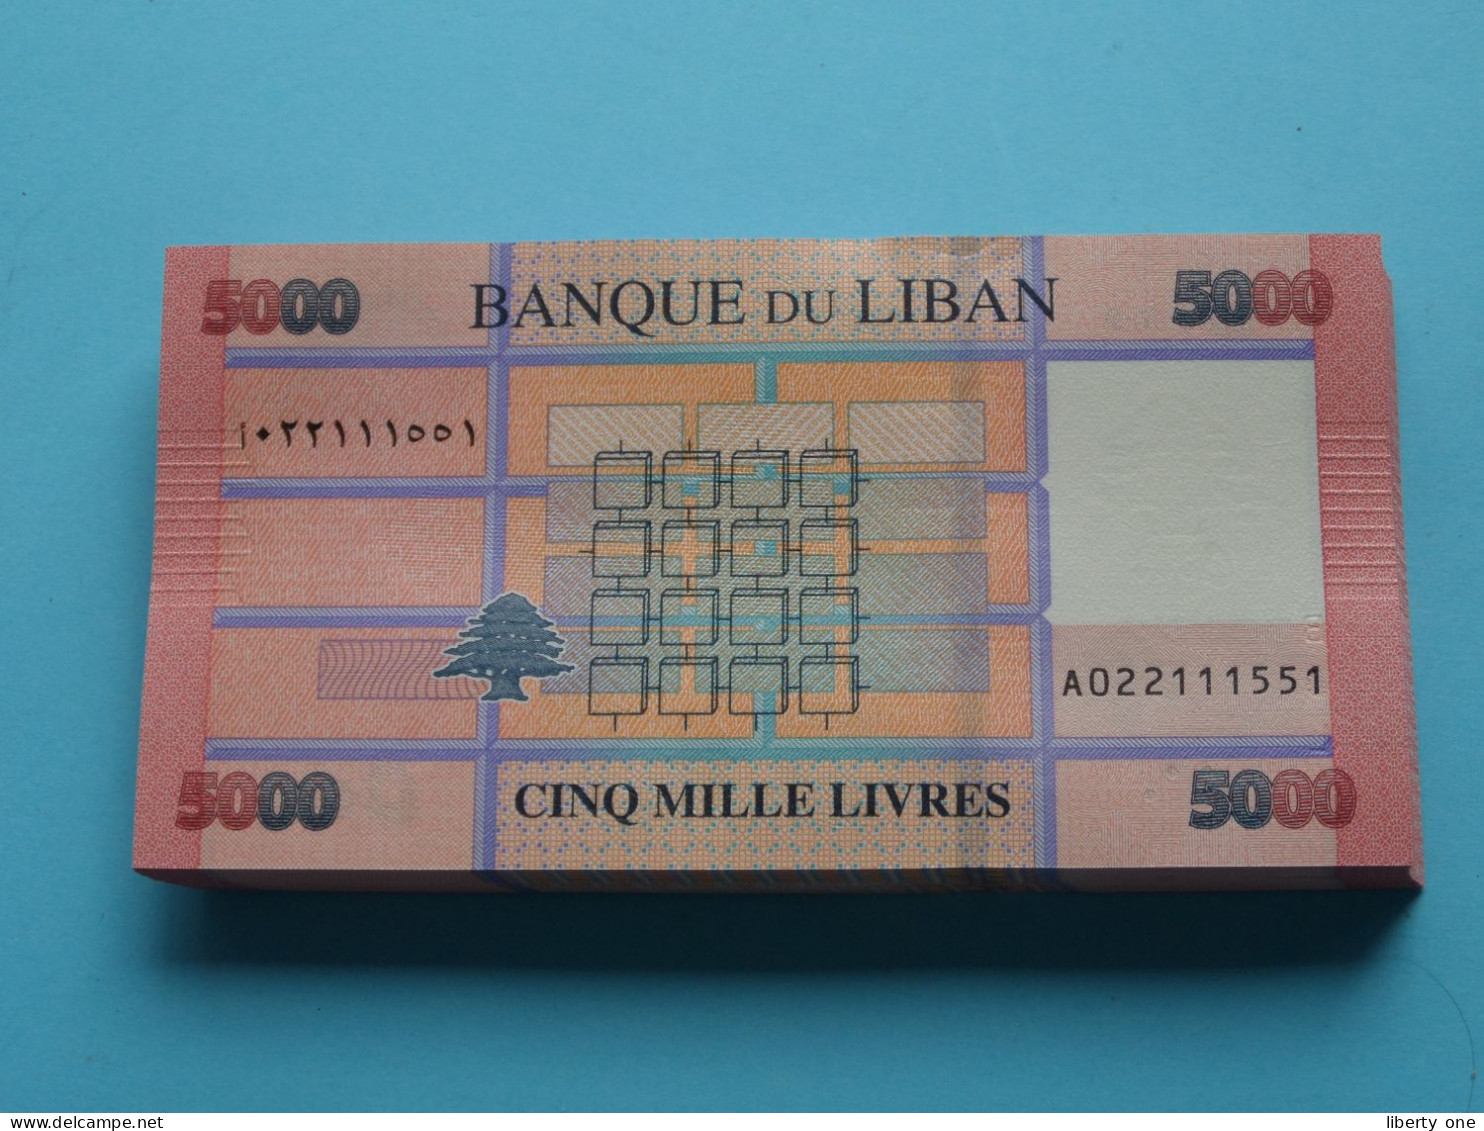 5000 Cinq Mille Livres ( Banque Du Liban ) Lebanon 2021 ( For Grade, Please See SCANS ) UNC ! - Liban